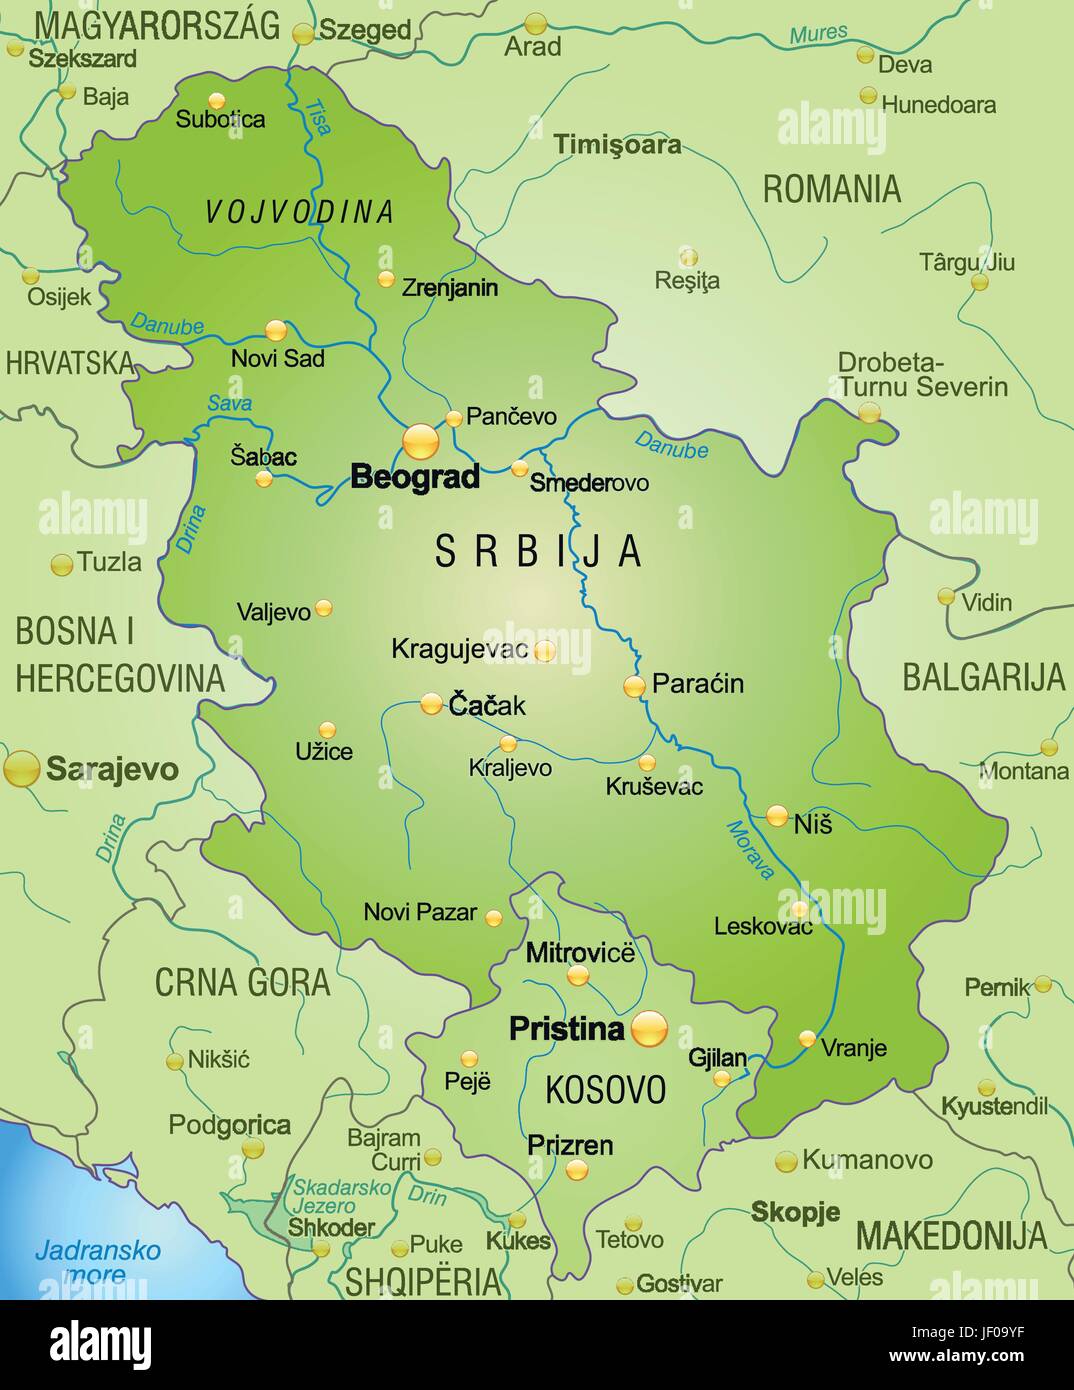 Карта сербии подробная на русском. Город Панчево в Сербии на карте. Расположение Сербии на карте. Панчево Сербия на карте. Подробная карта Сербии.